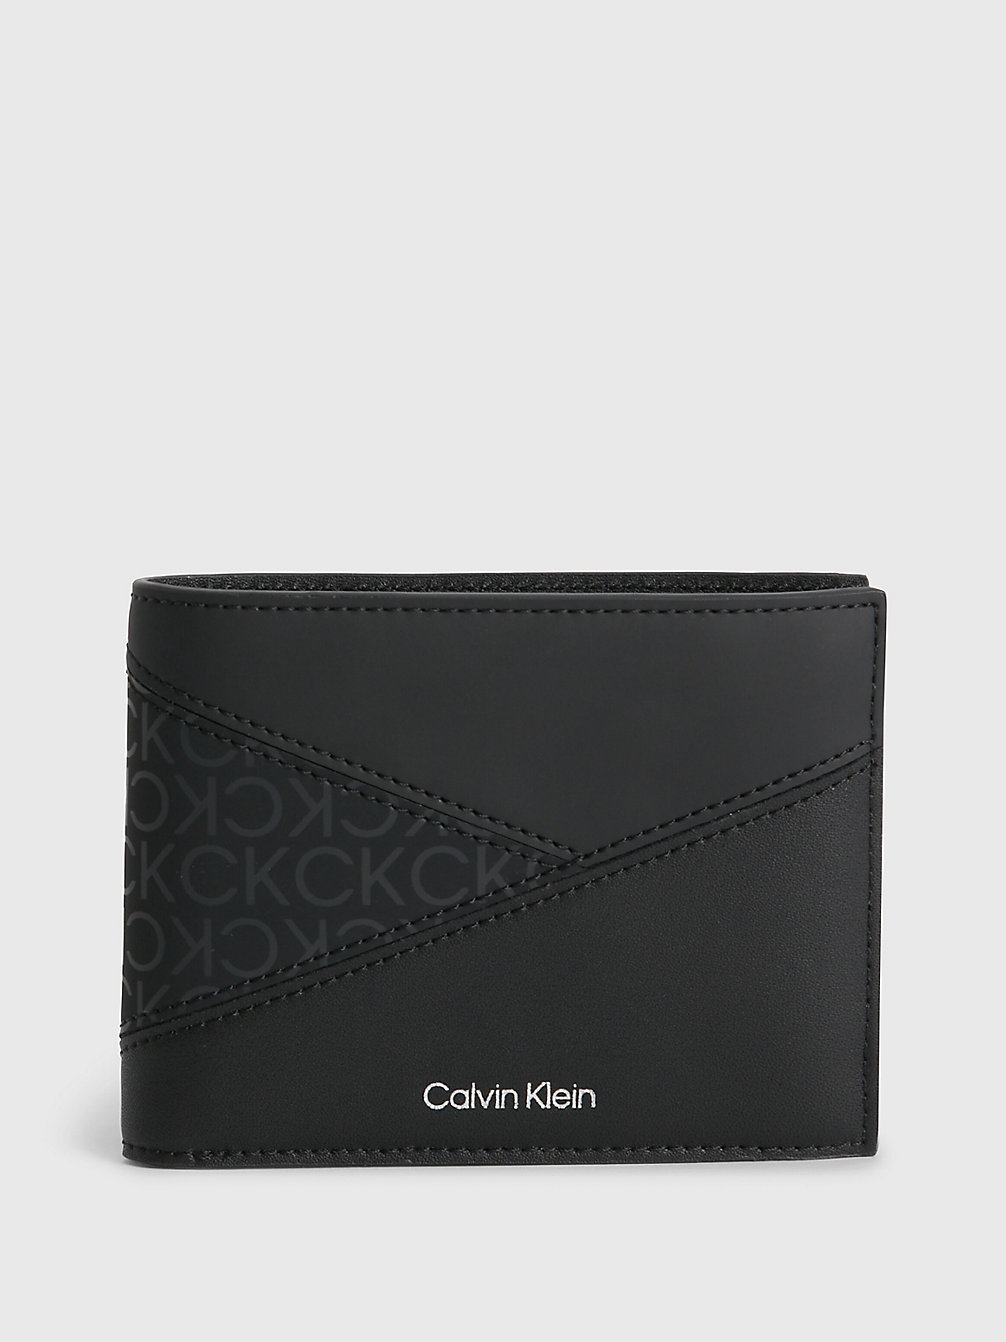 CK BLACK > Rfid-Portemonnaie Aus Recyceltem Material > undefined men - Calvin Klein